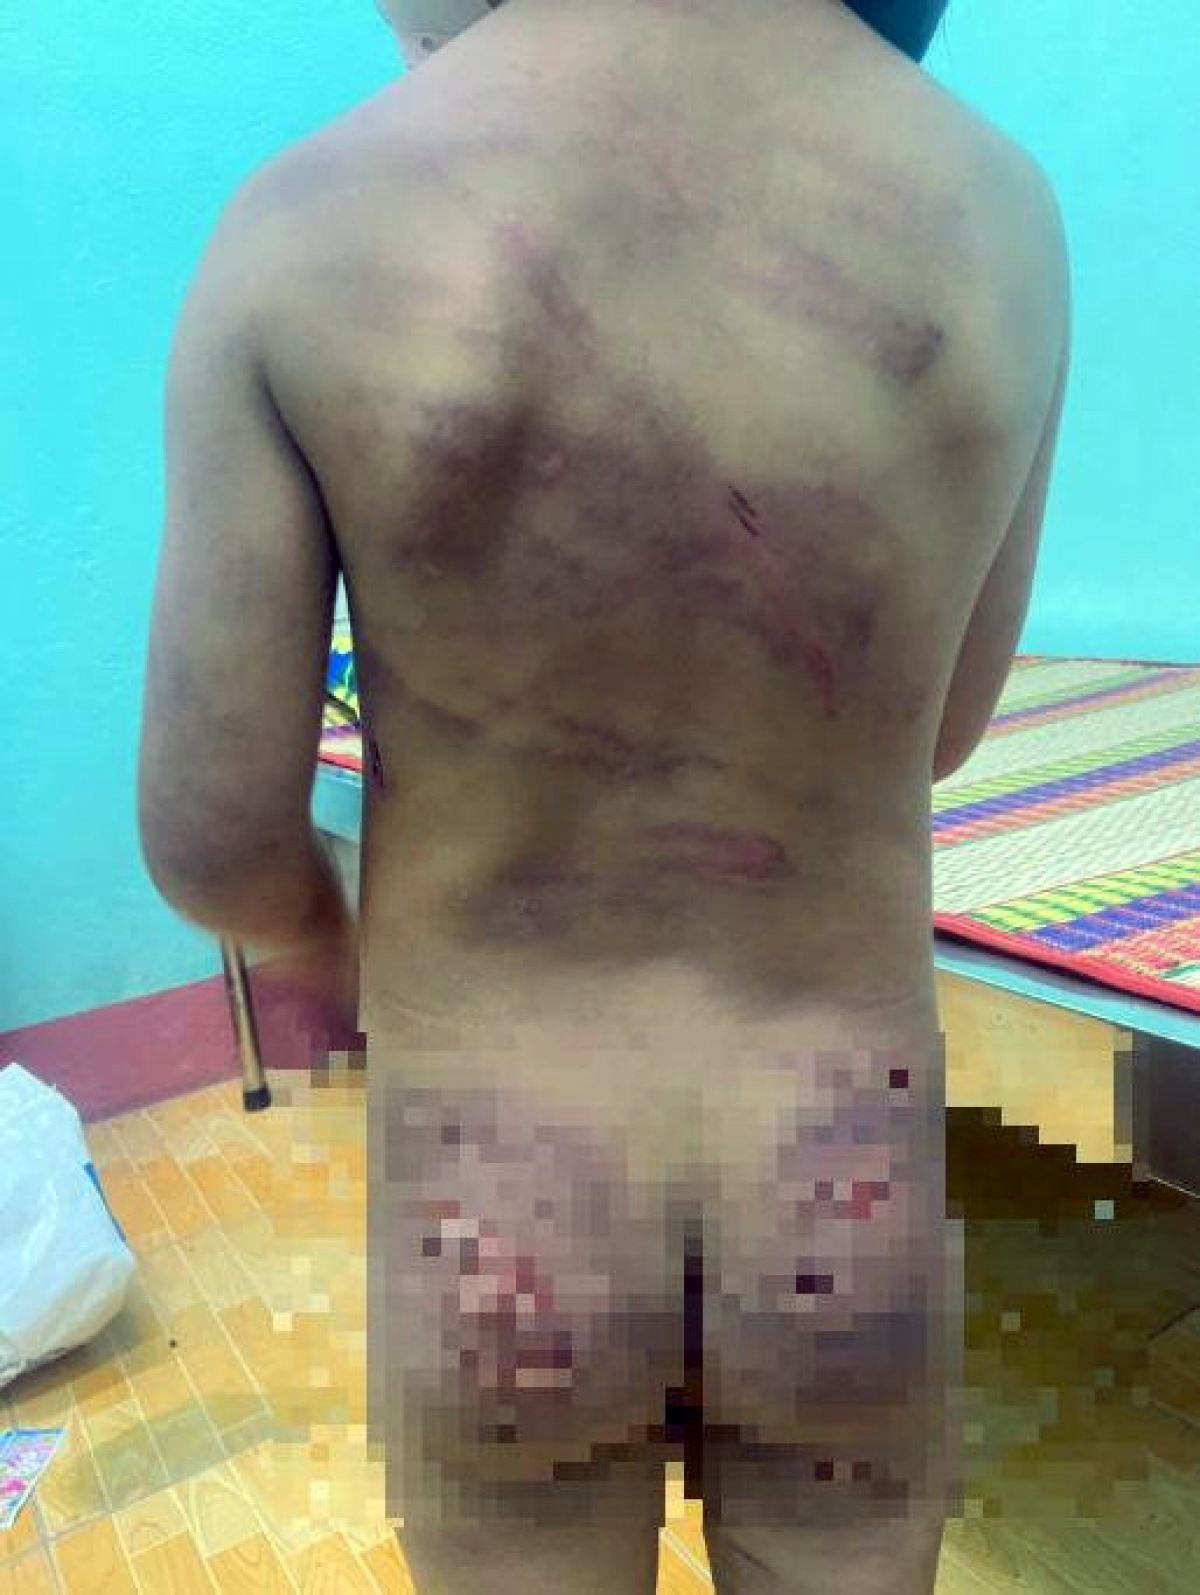 Bé 7 tuổi nghi bị bạo hành ở Bình Phước đã được đưa đi điều trị - Ảnh 1.